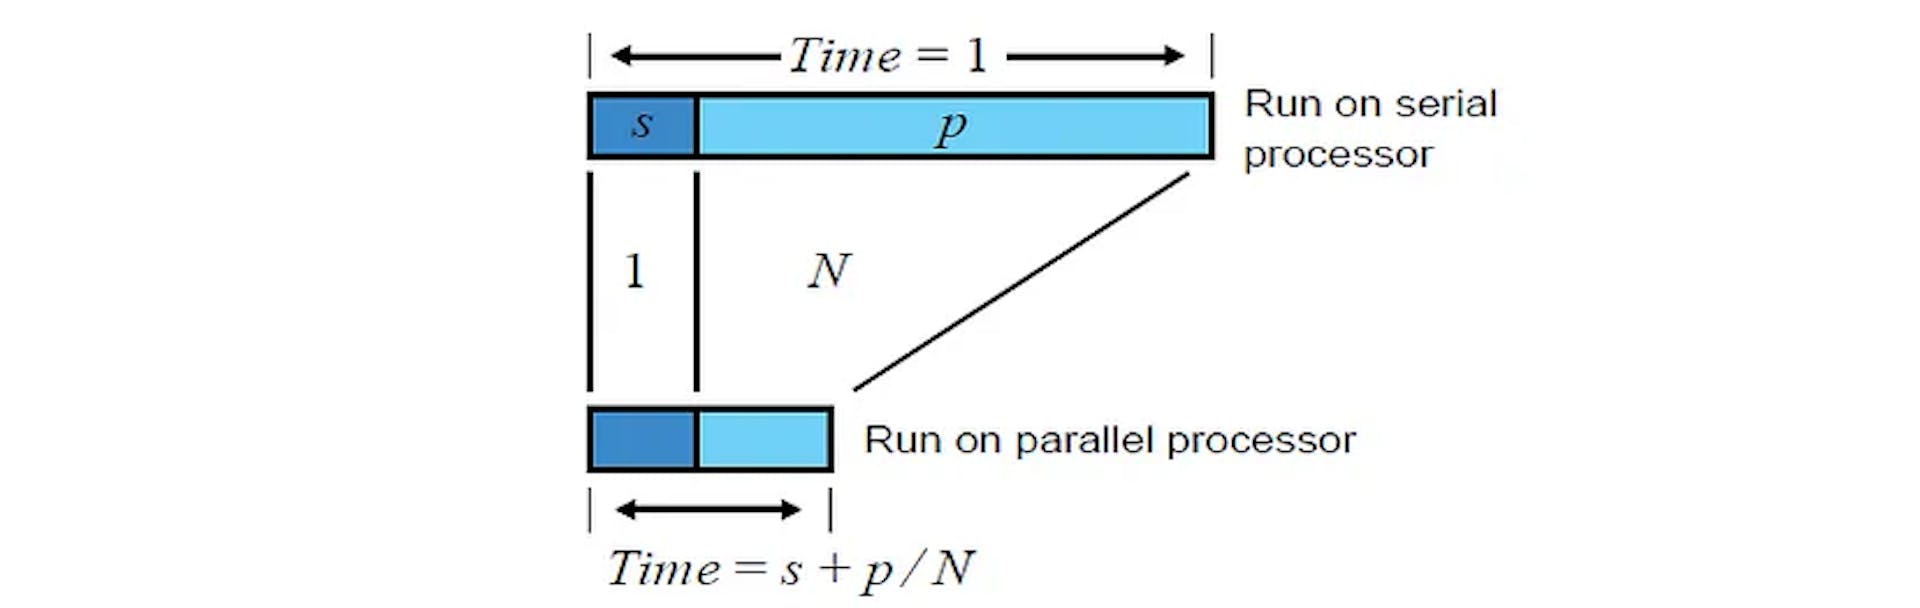 Sabit Boyutlu Model (Amdahl Yasası) [2]